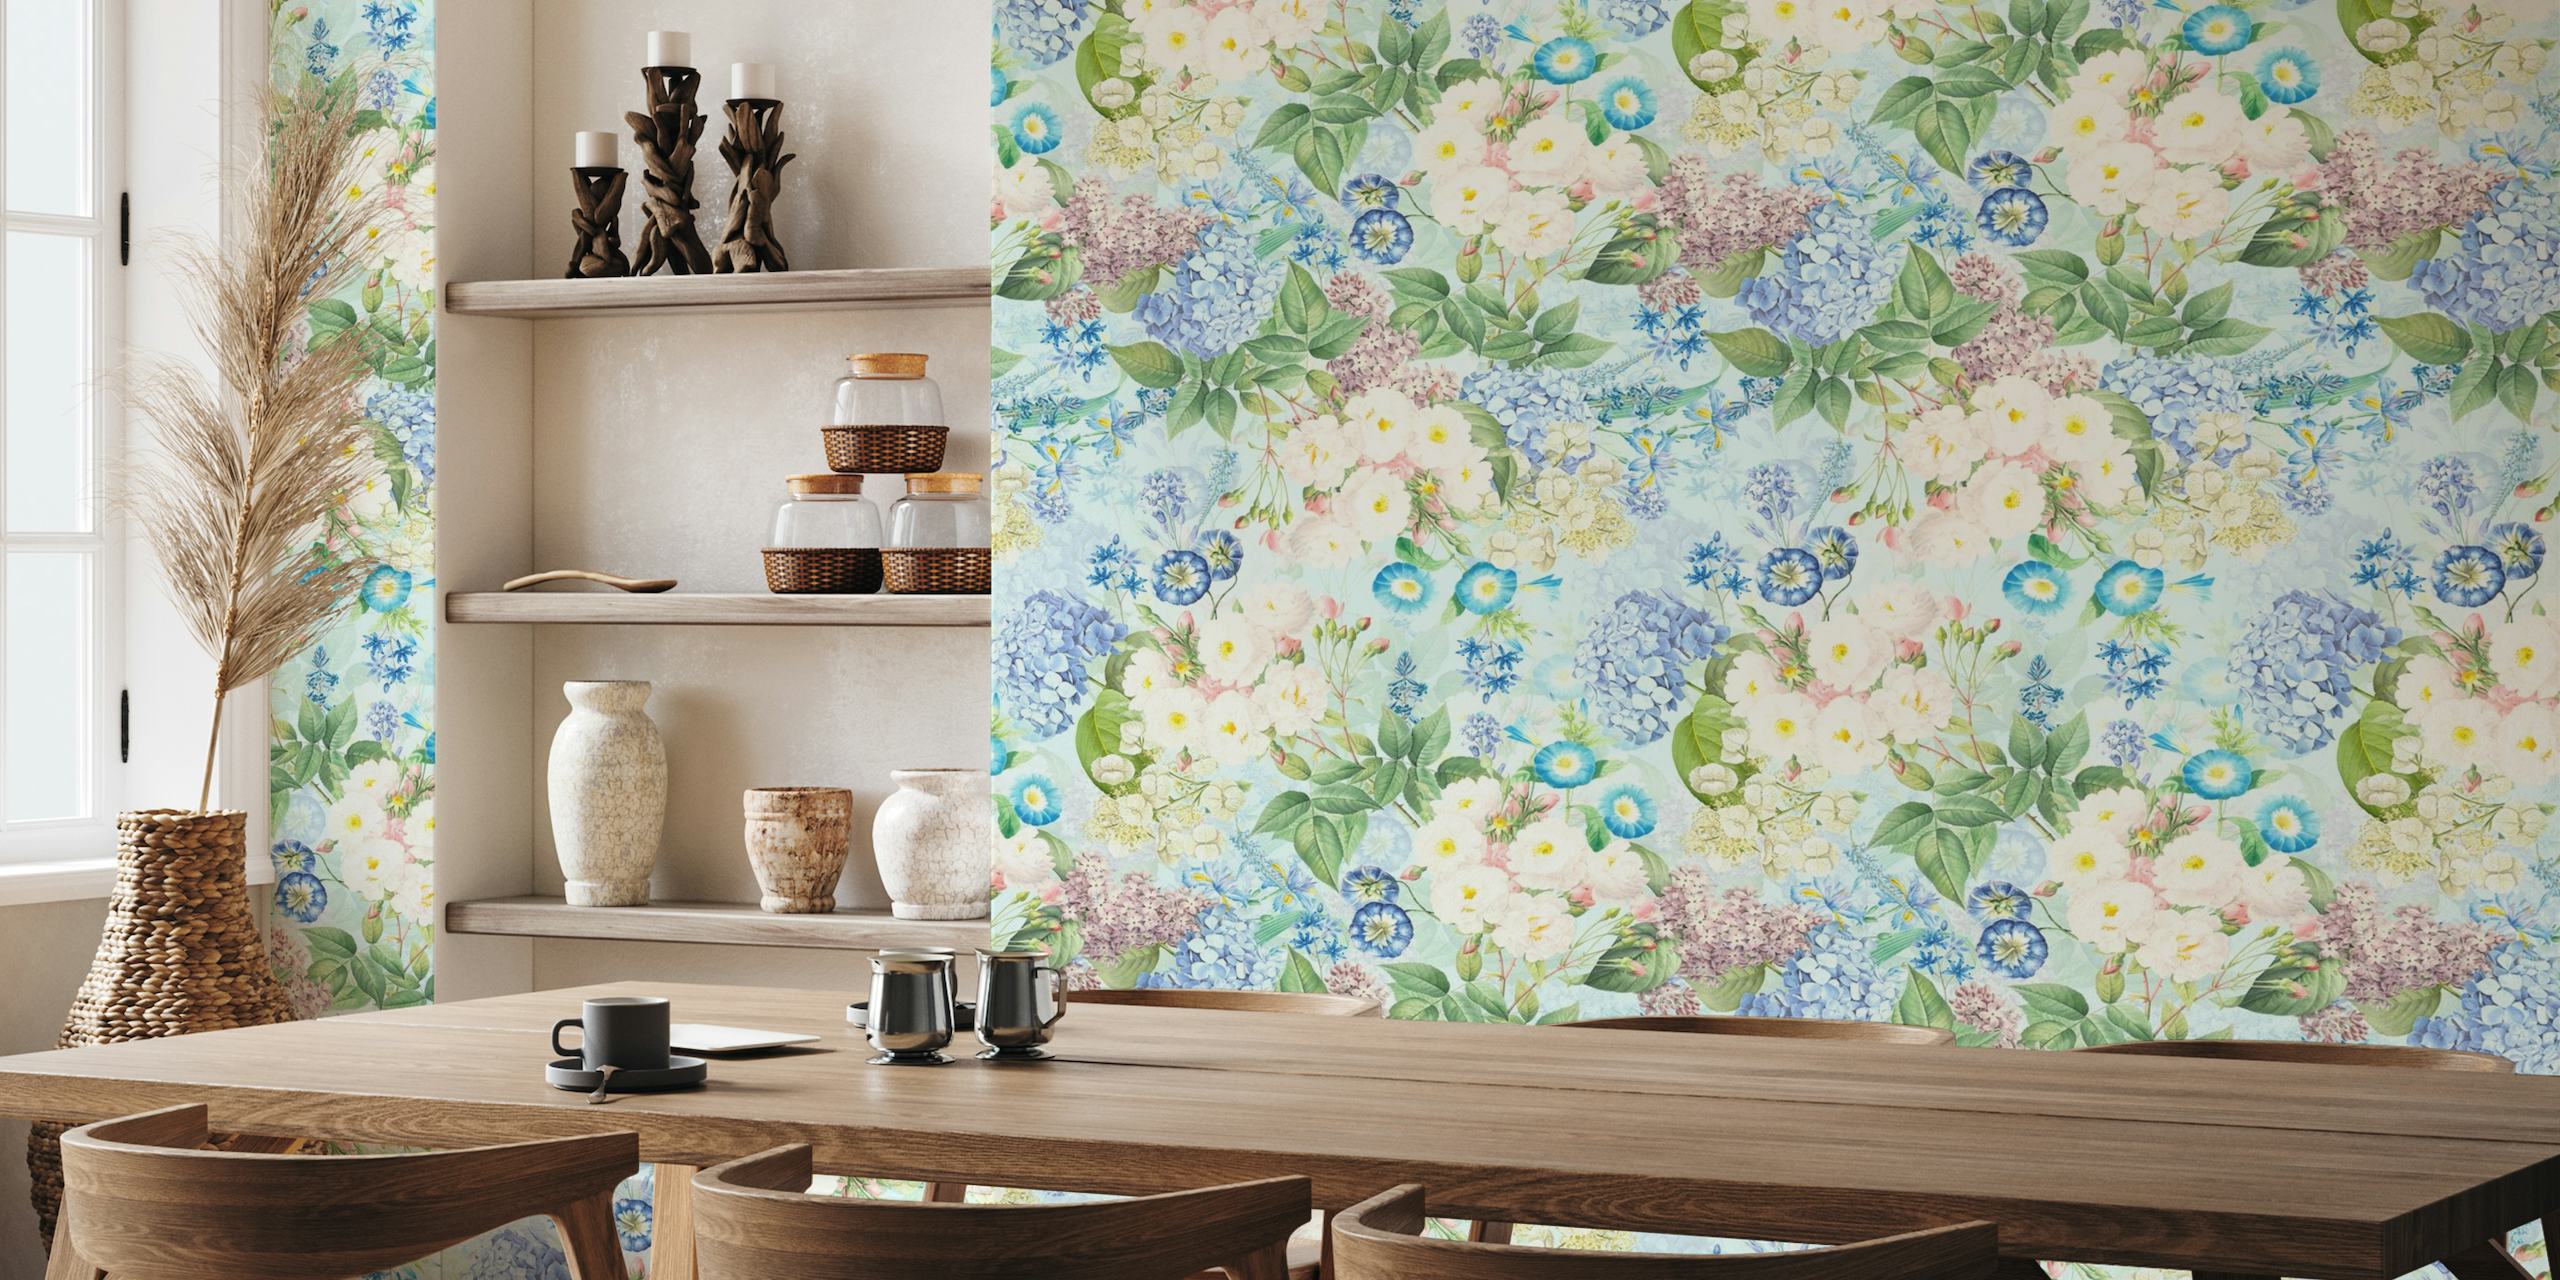 Blauwe vintage rozentuinmuurschildering met bloeiende bloemen en weelderig groen